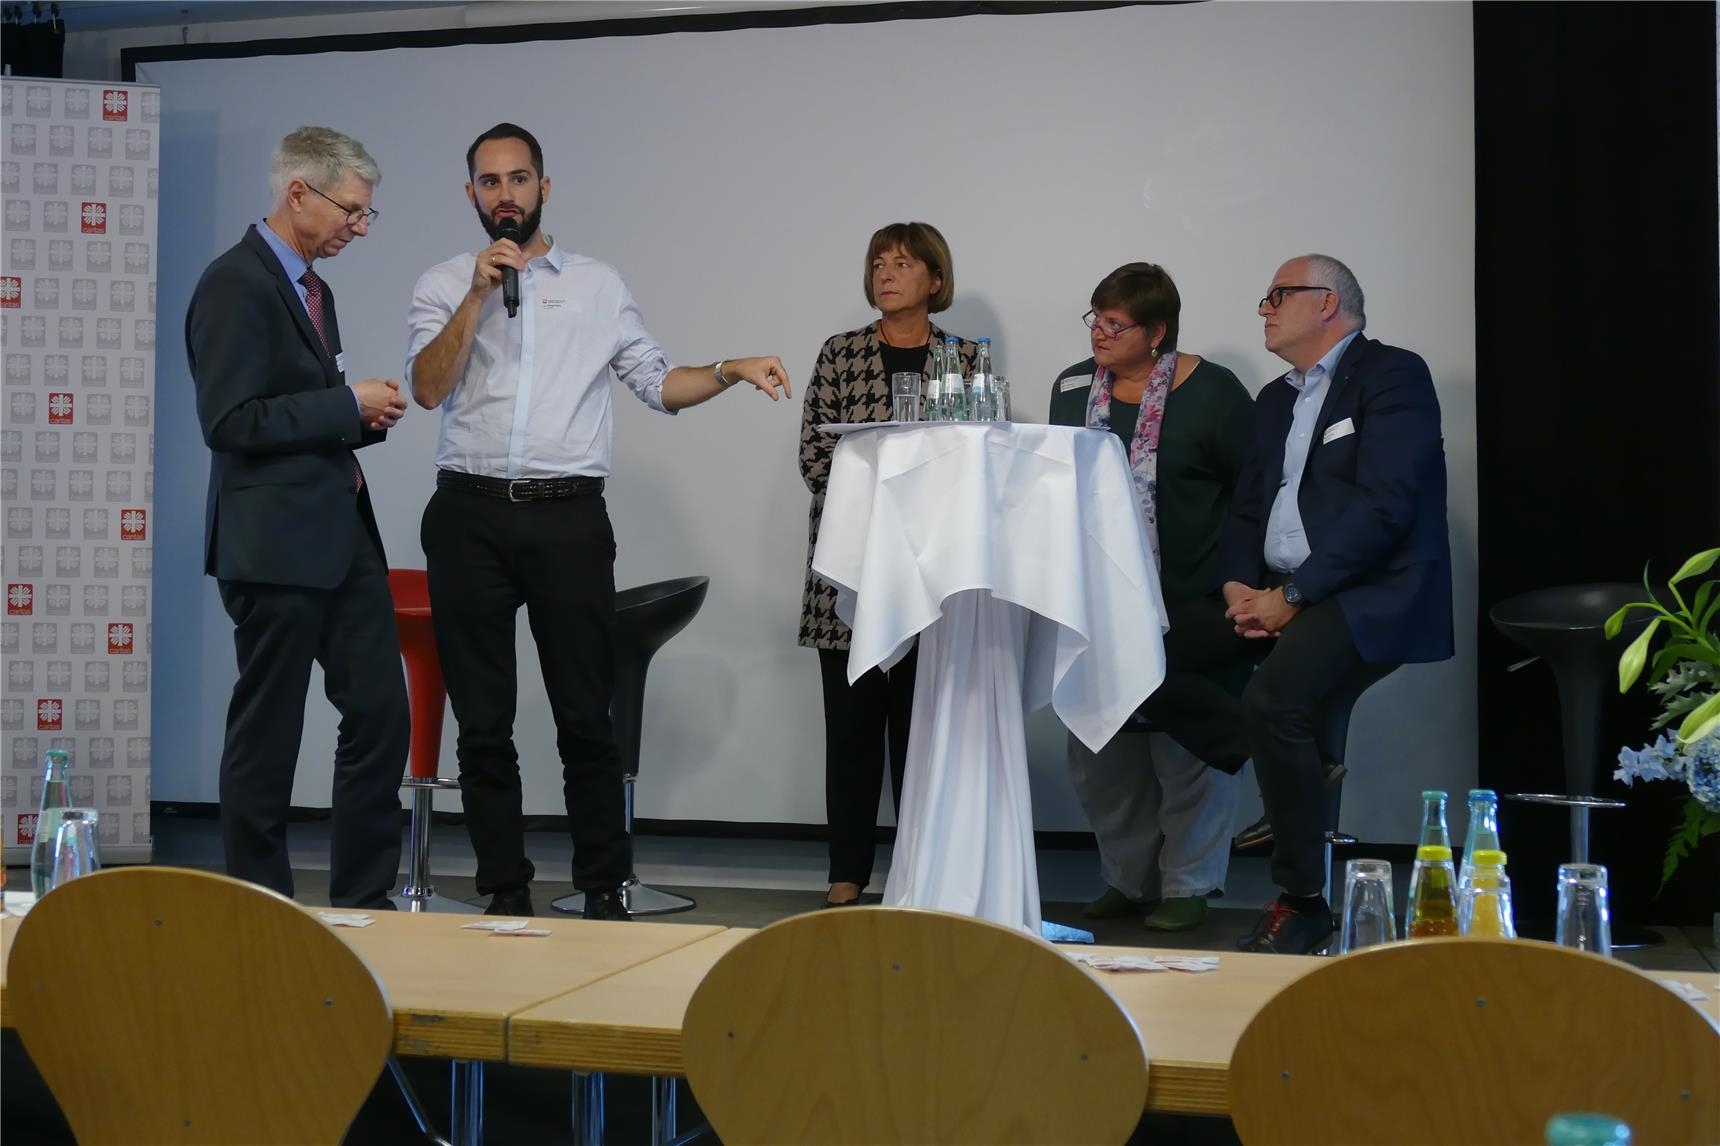 Diskussionsrunde an einem Stehtisch auf Podium (DiCV Aachen)